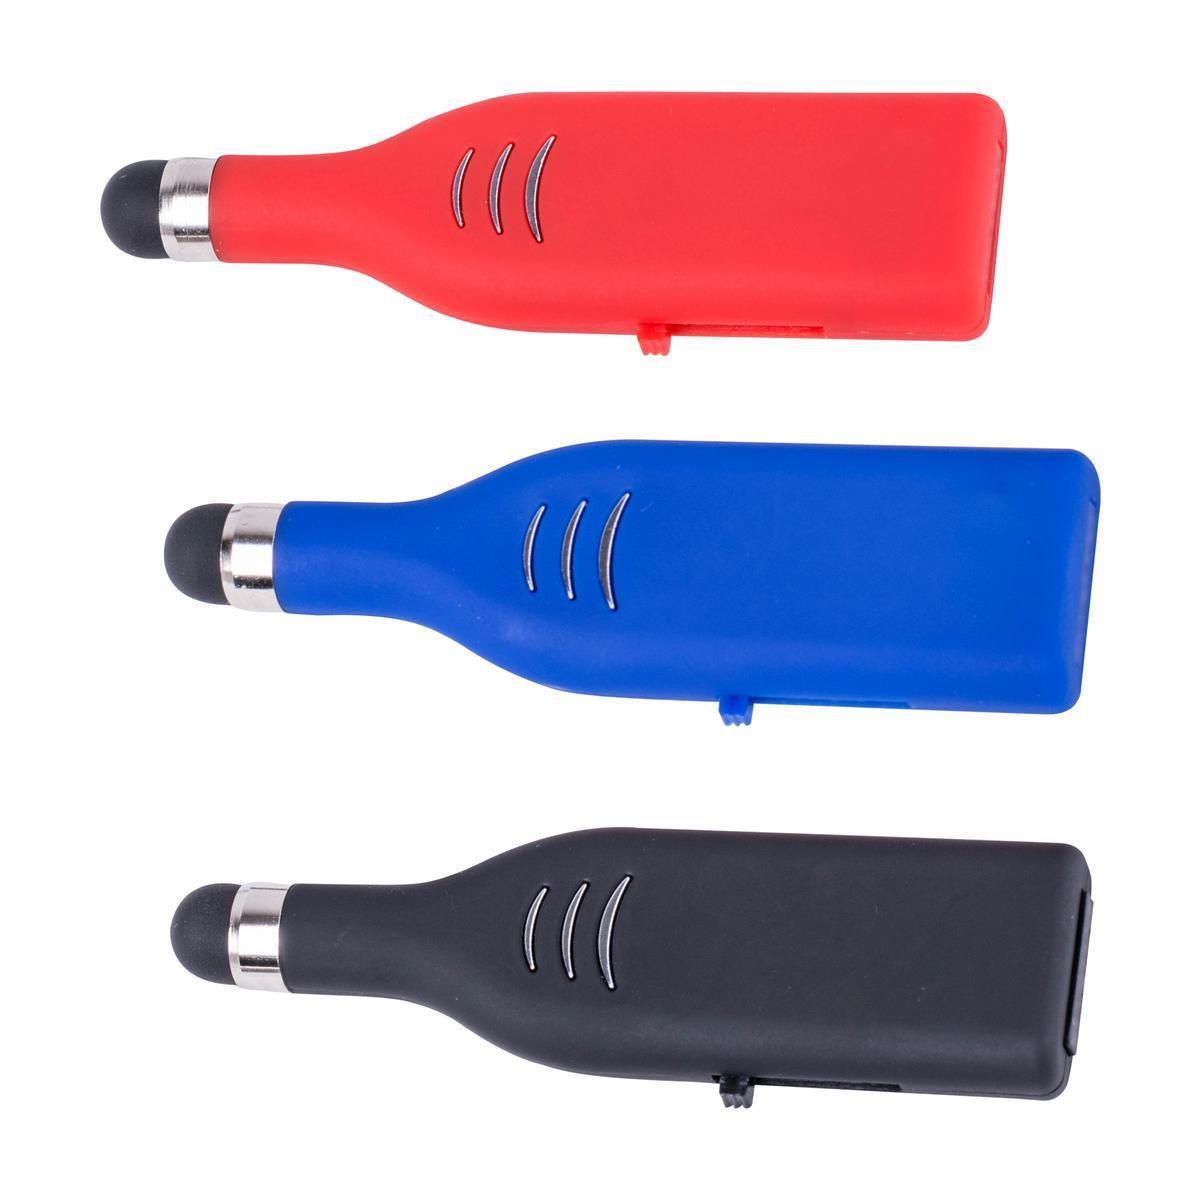 Stylet écran tactile USB - Plastique - 7,2 x 0,85 x H 2 cm - Différents coloris